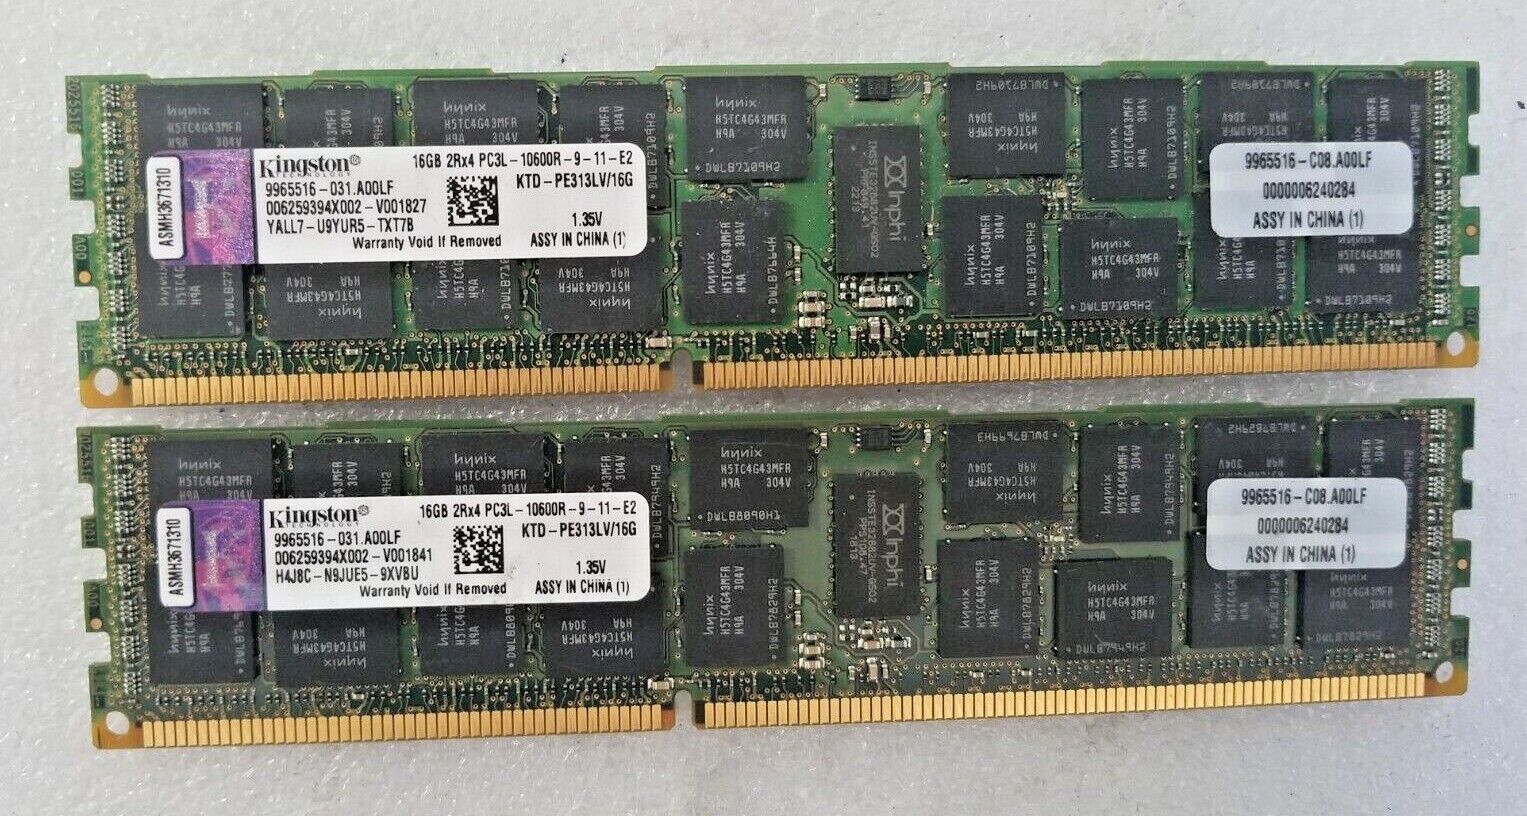 Lot of 2 Kingston 16GB 2Rx4 PC3L-10600R DDR3 1333MHz KTD-PE313LV-16G